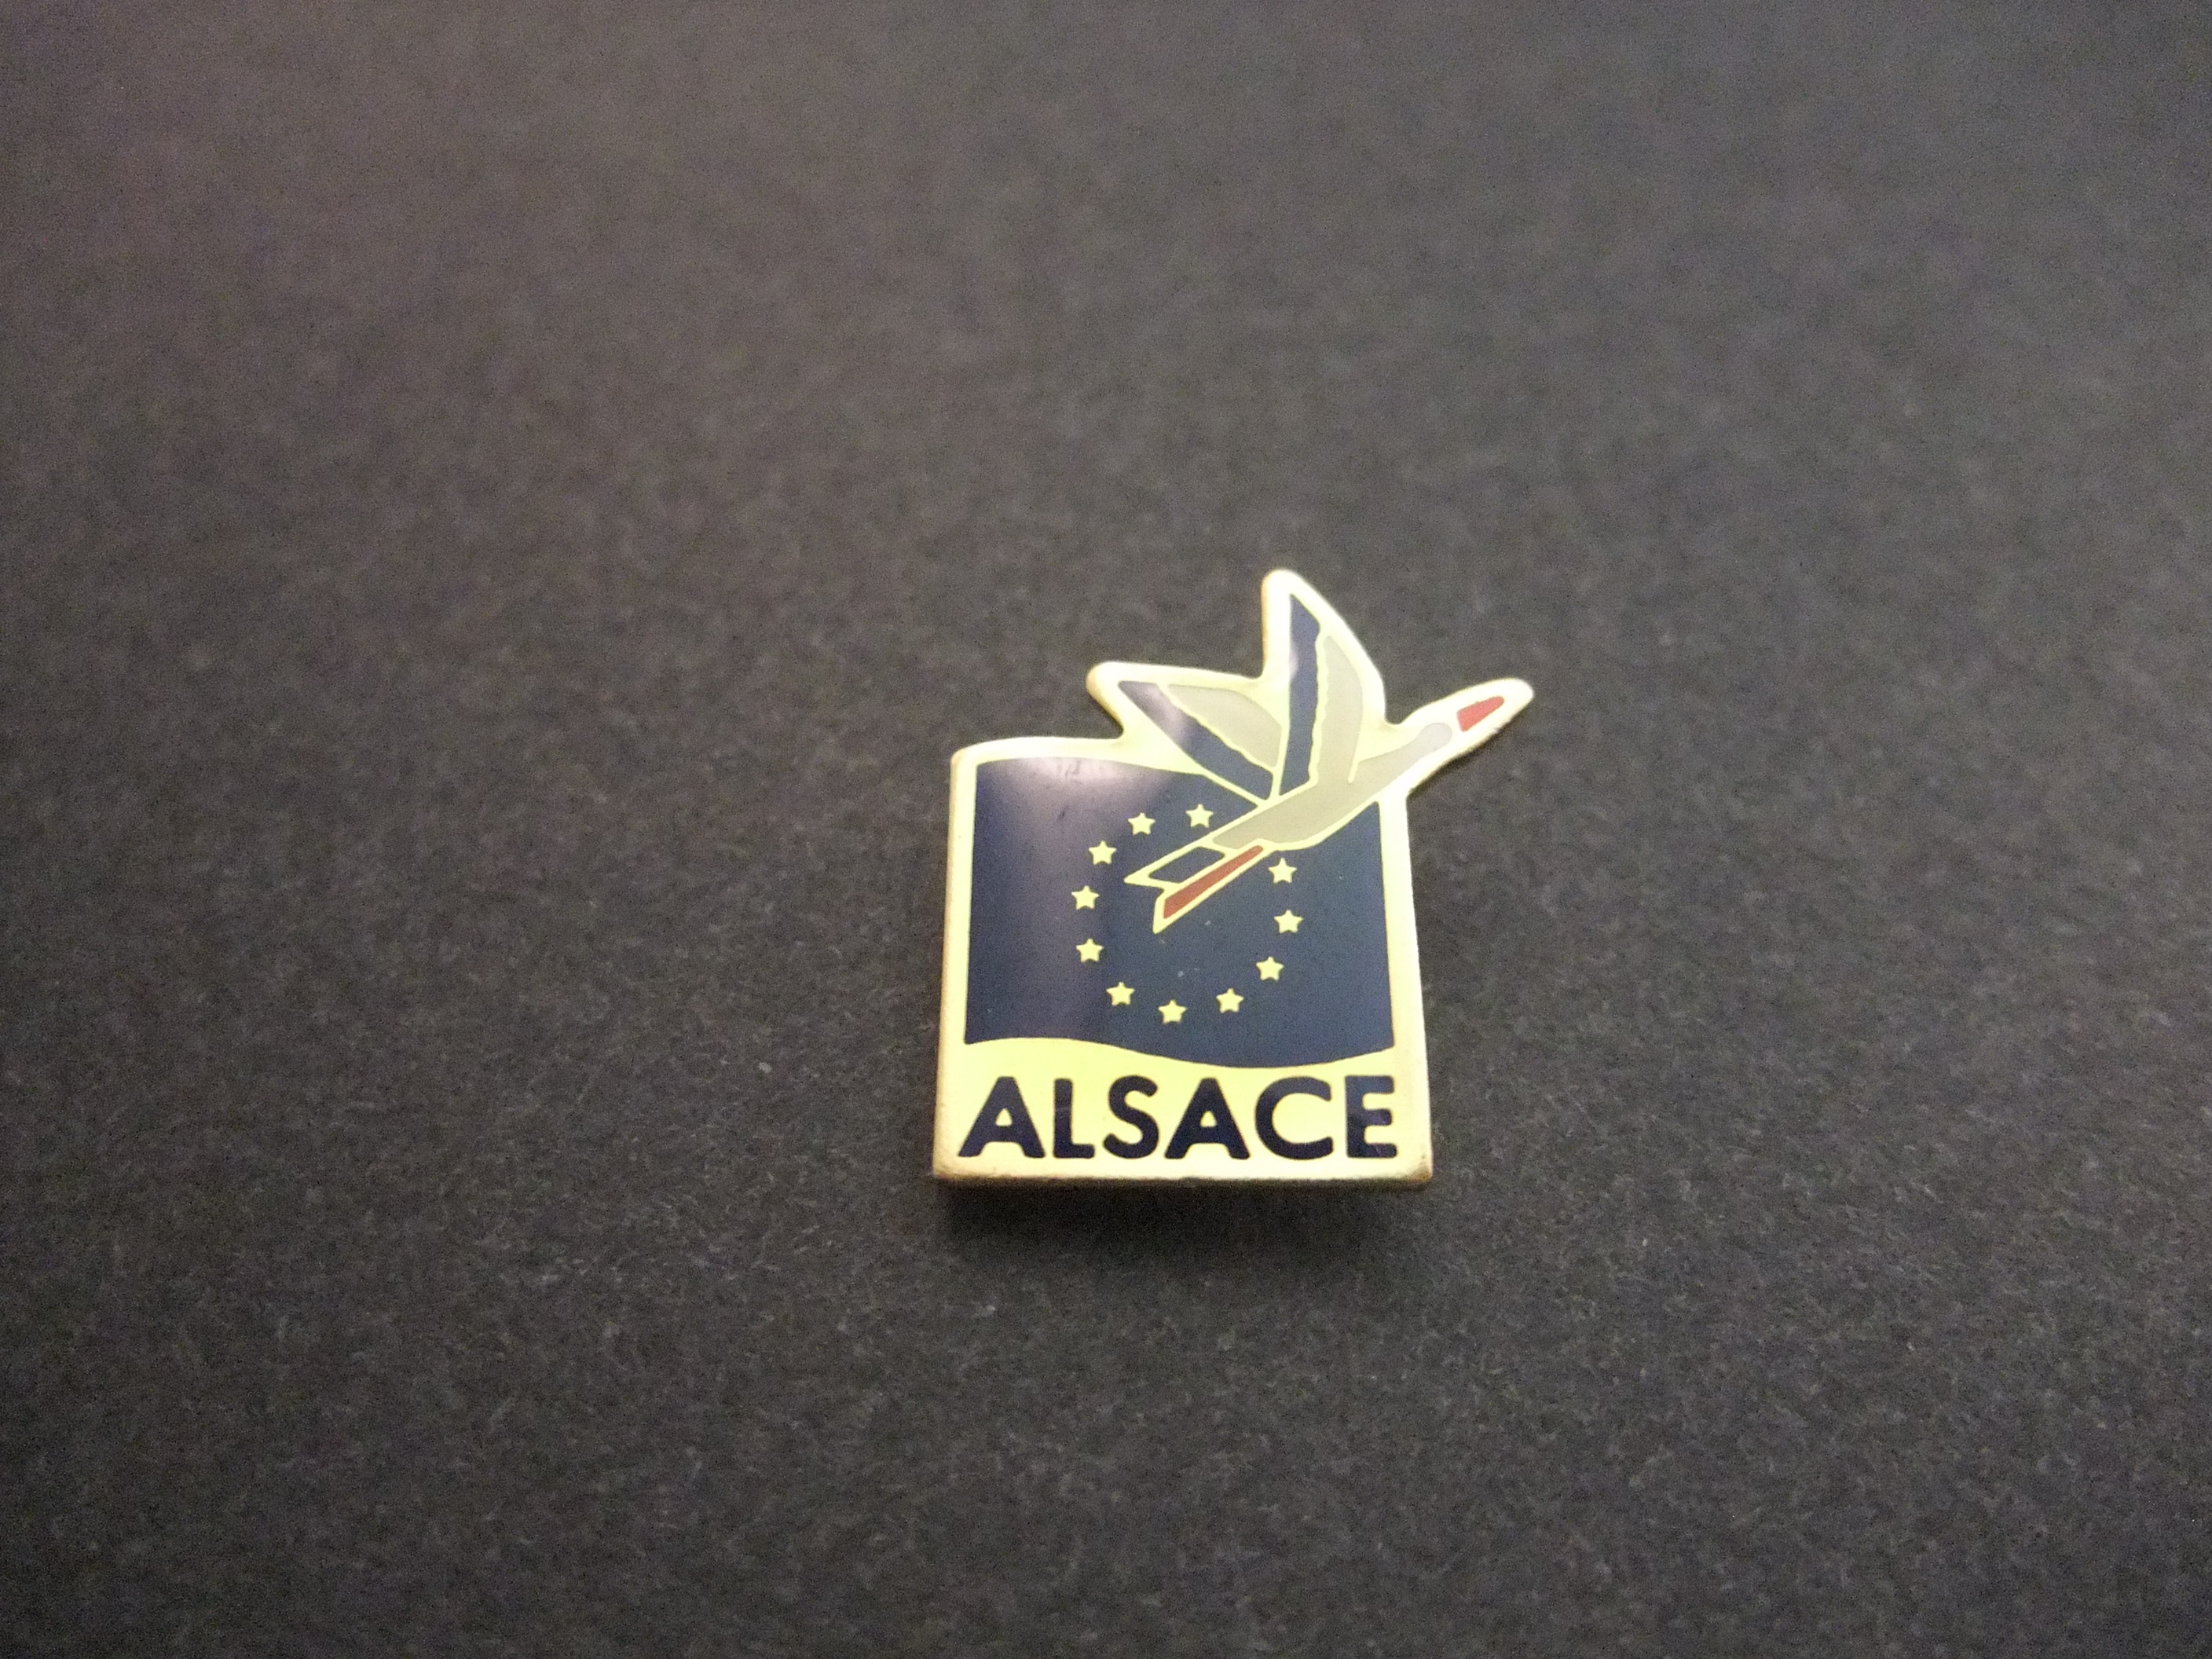 Alsace - (Elzas) regio in Frankrijk